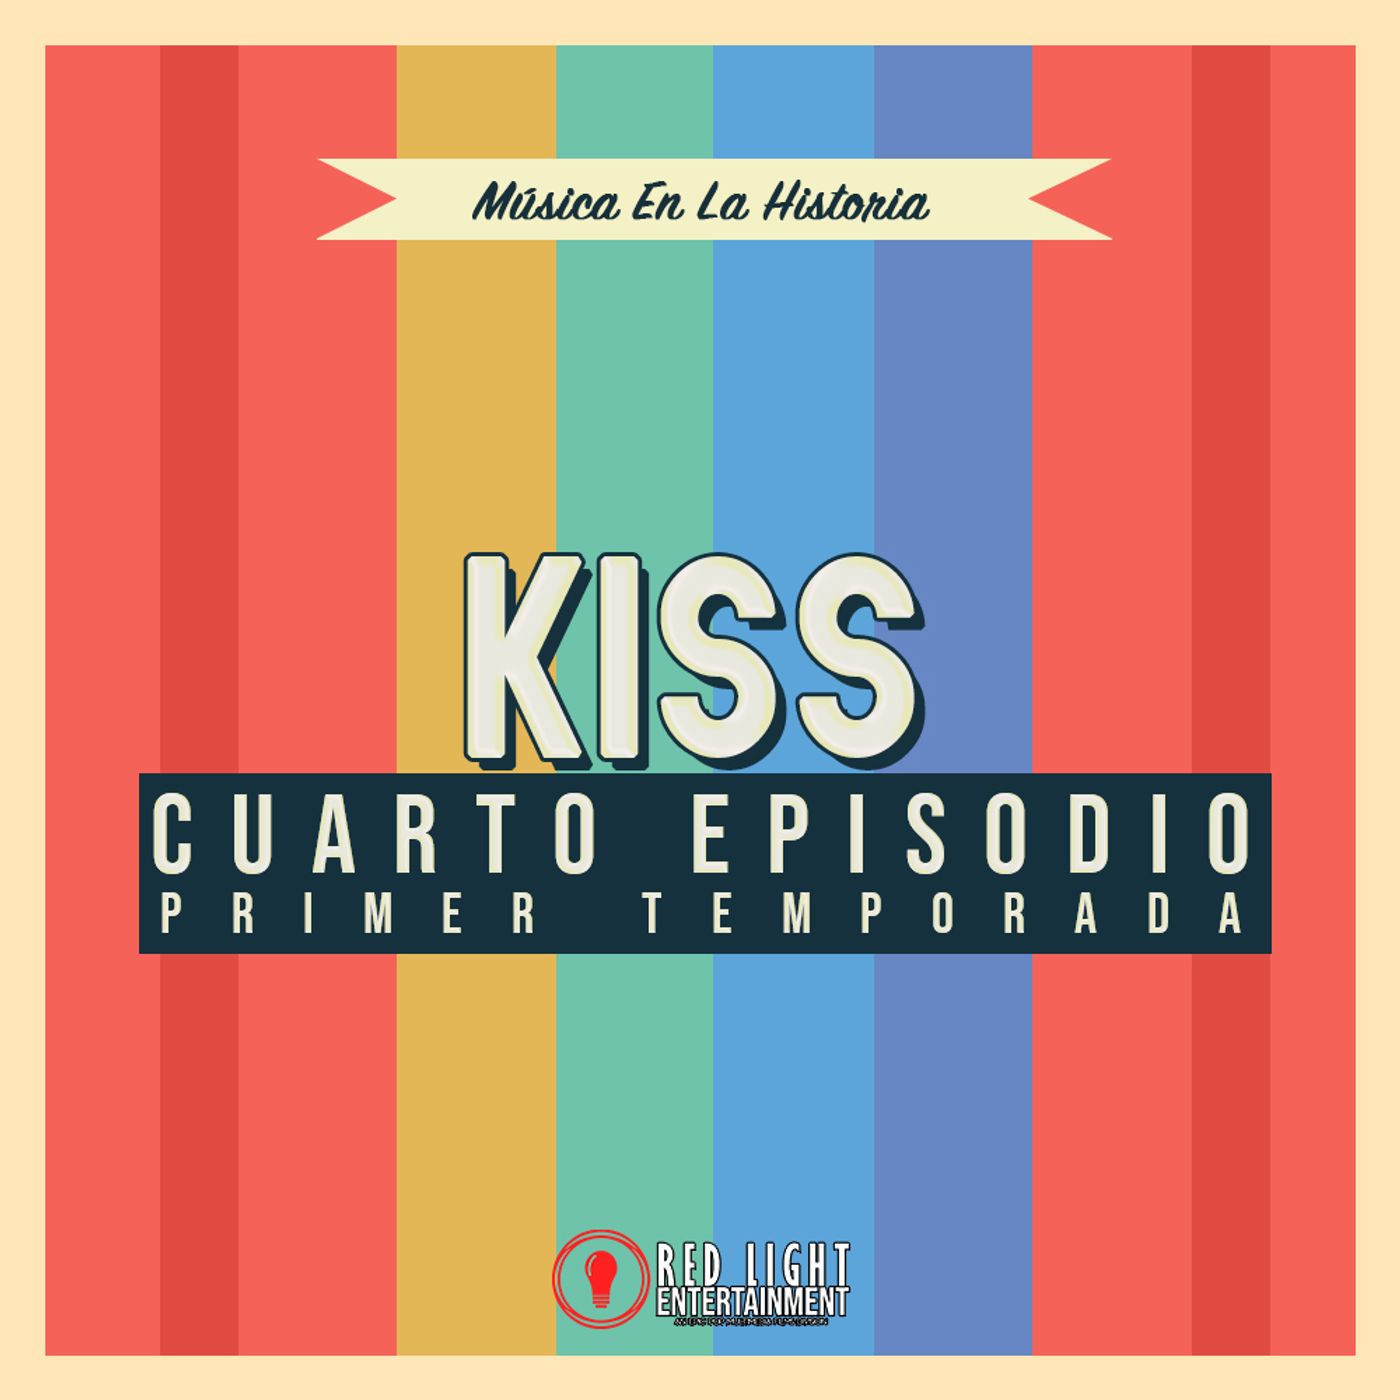 Episodio 04 - Rock & Roll Toda la Noche: KISS